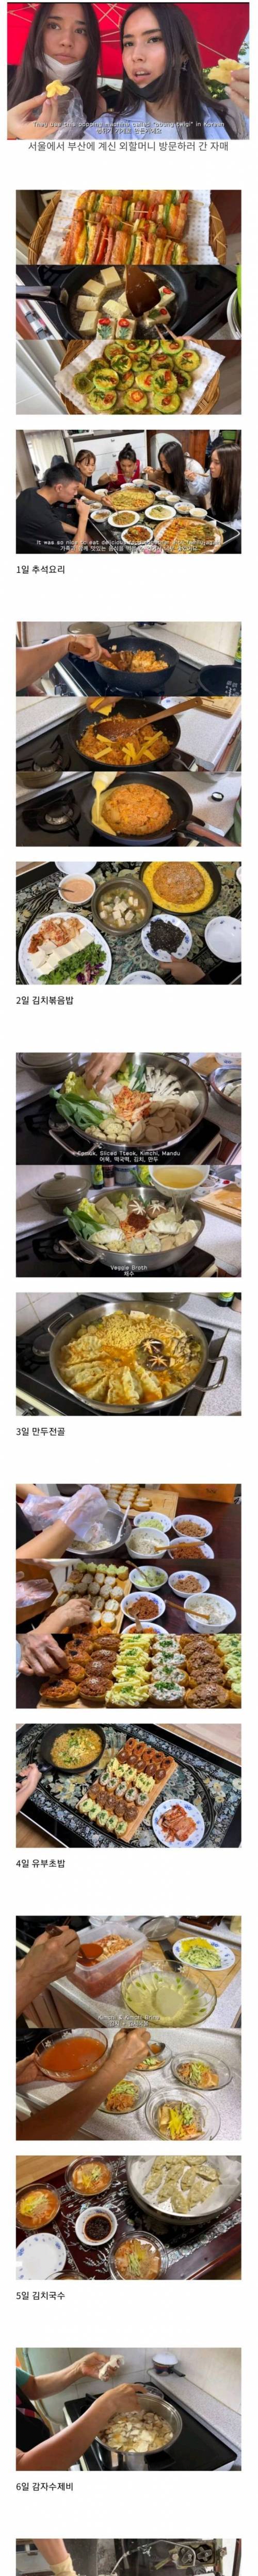 5 한국 혼혈 누나들이 부산 외할머니 집에서 먹은 음식들.jpg